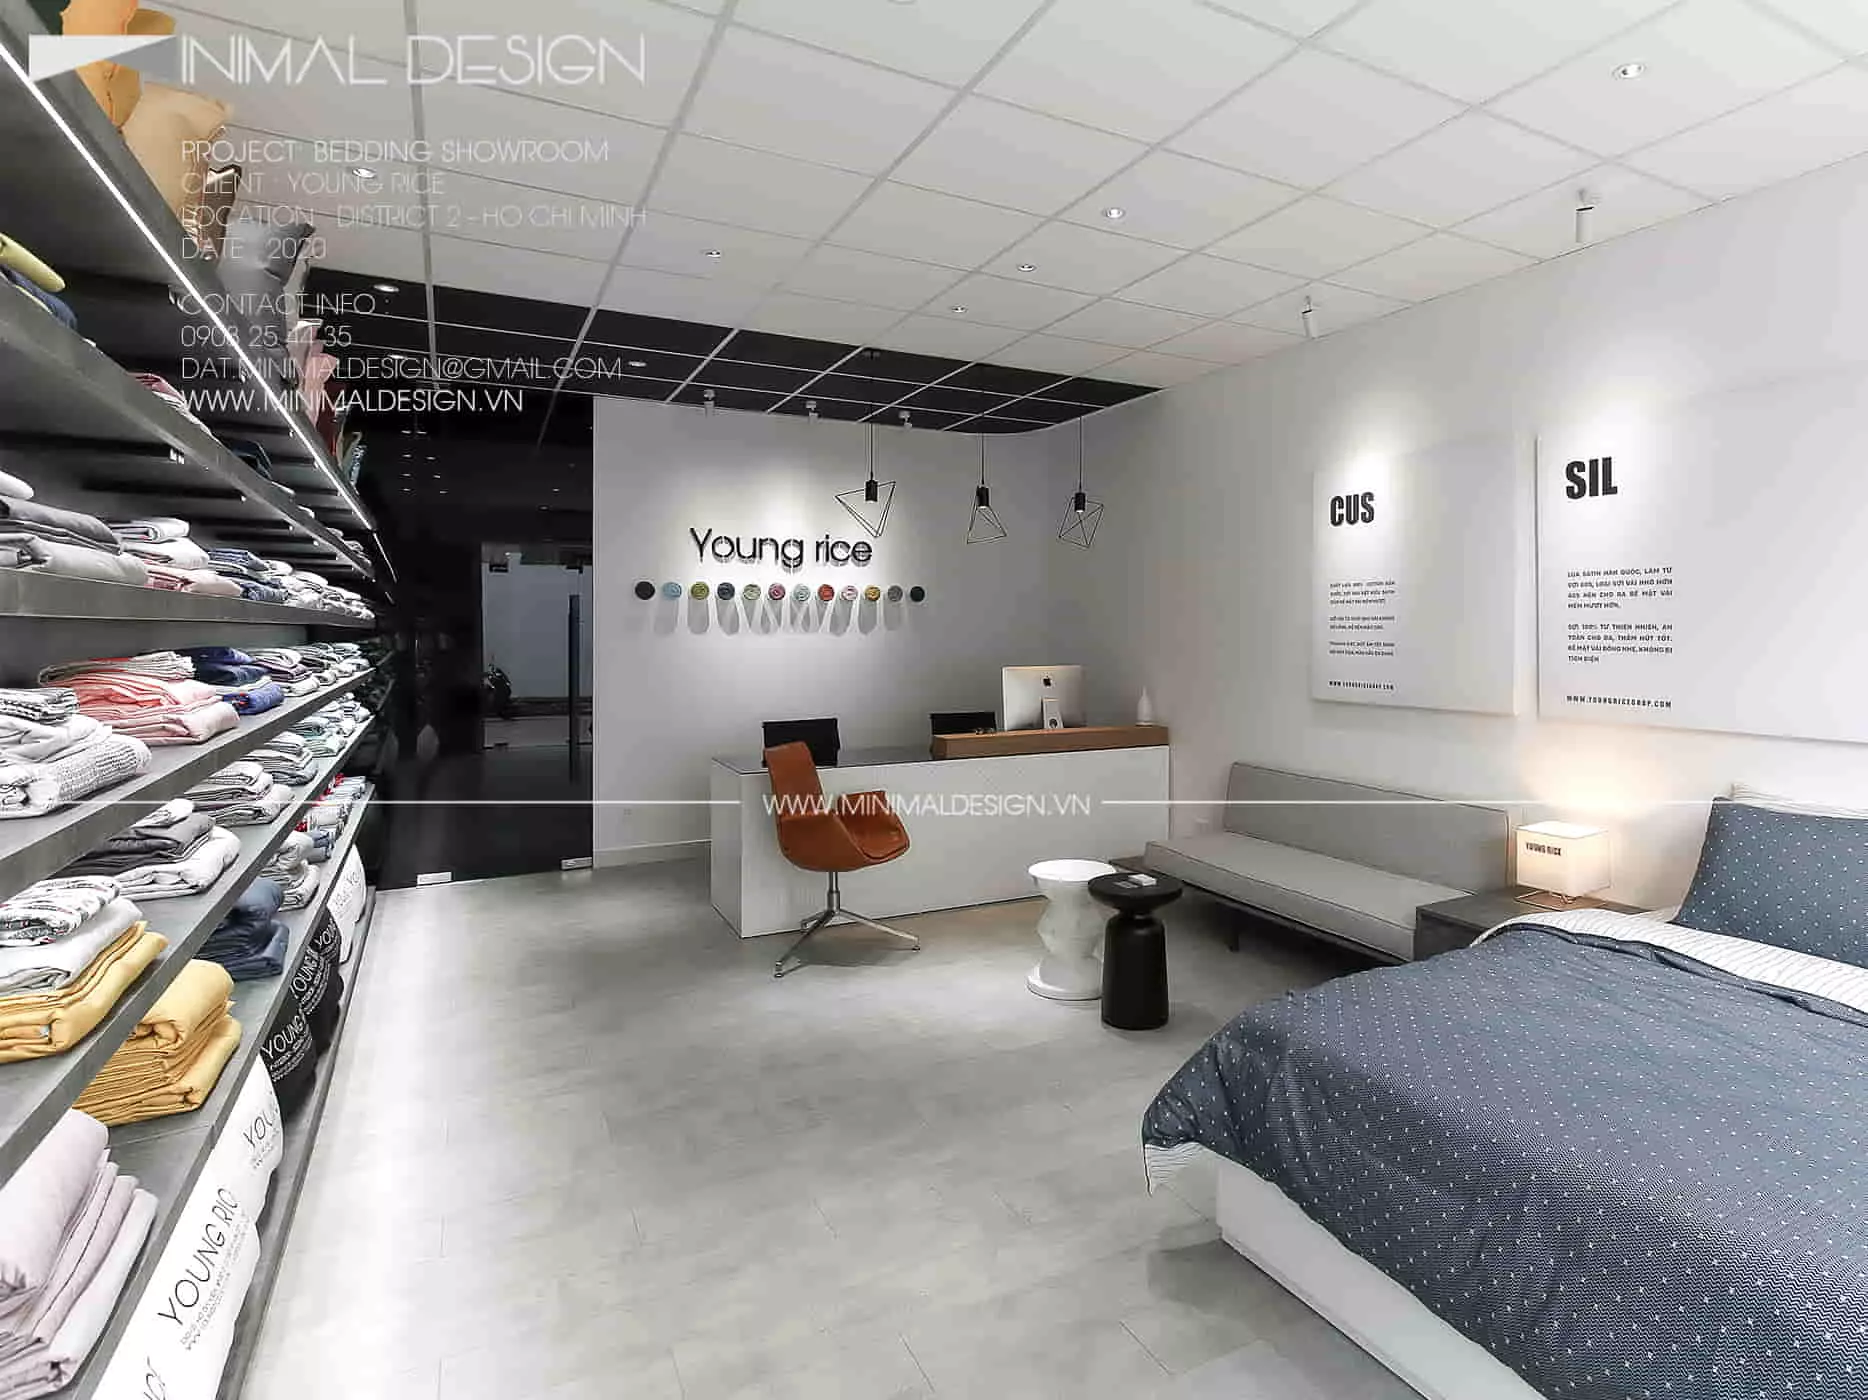 Cùng Minimal Design phân tích rõ hơn về tác dụng của ánh sáng khi thiết kế Showroom để có cơ sở thiết lập không gian thêm sang trọng.